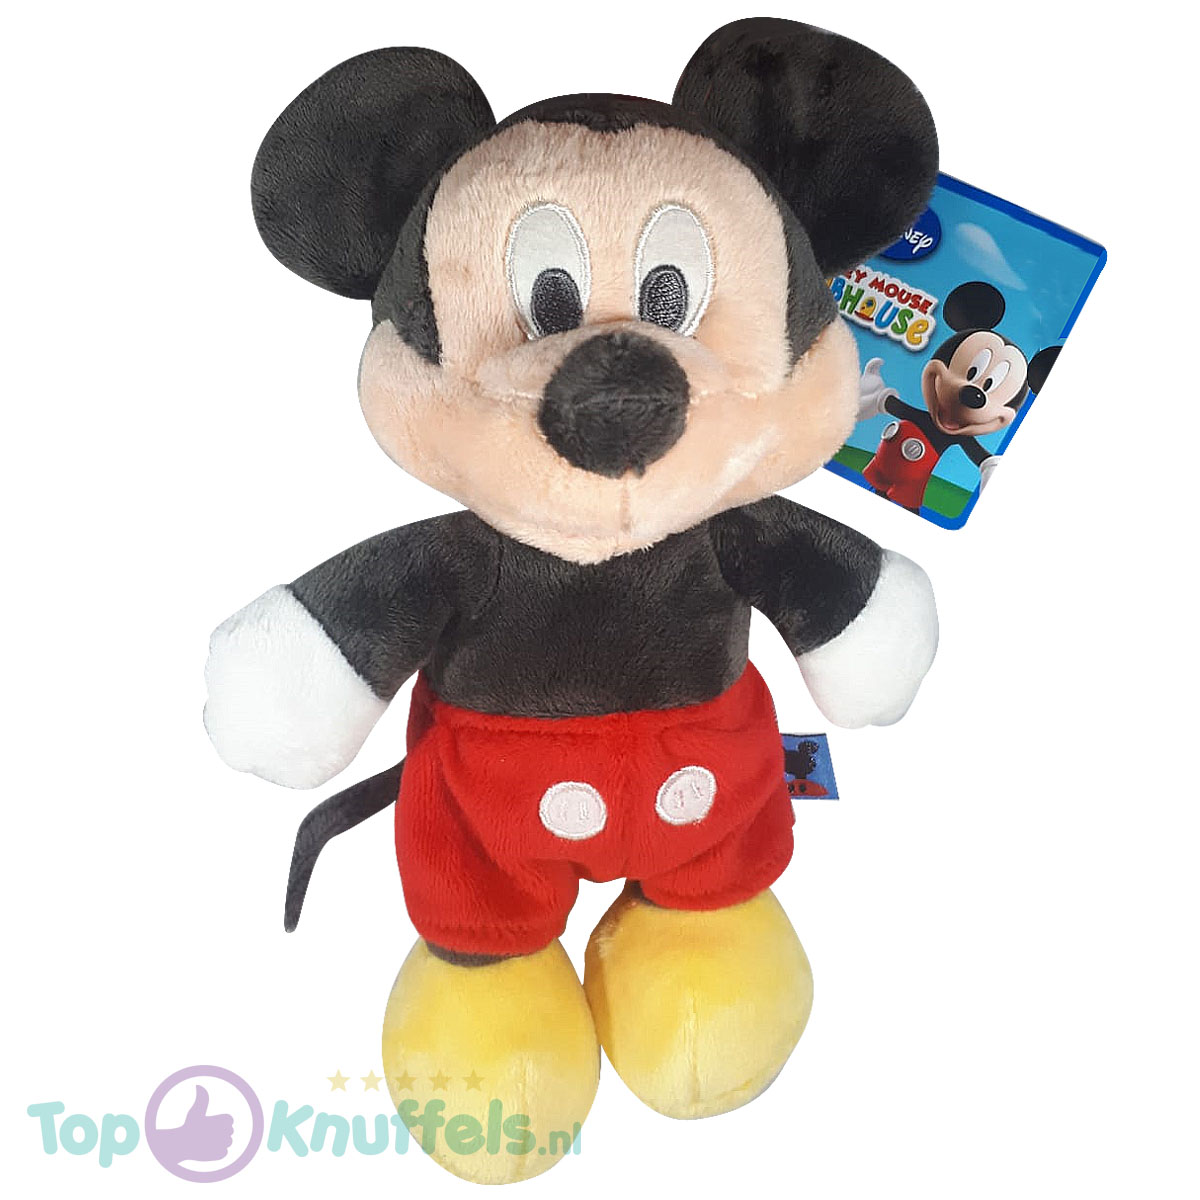 Mouse pluche 24cm - Disney Clubhouse kopen?